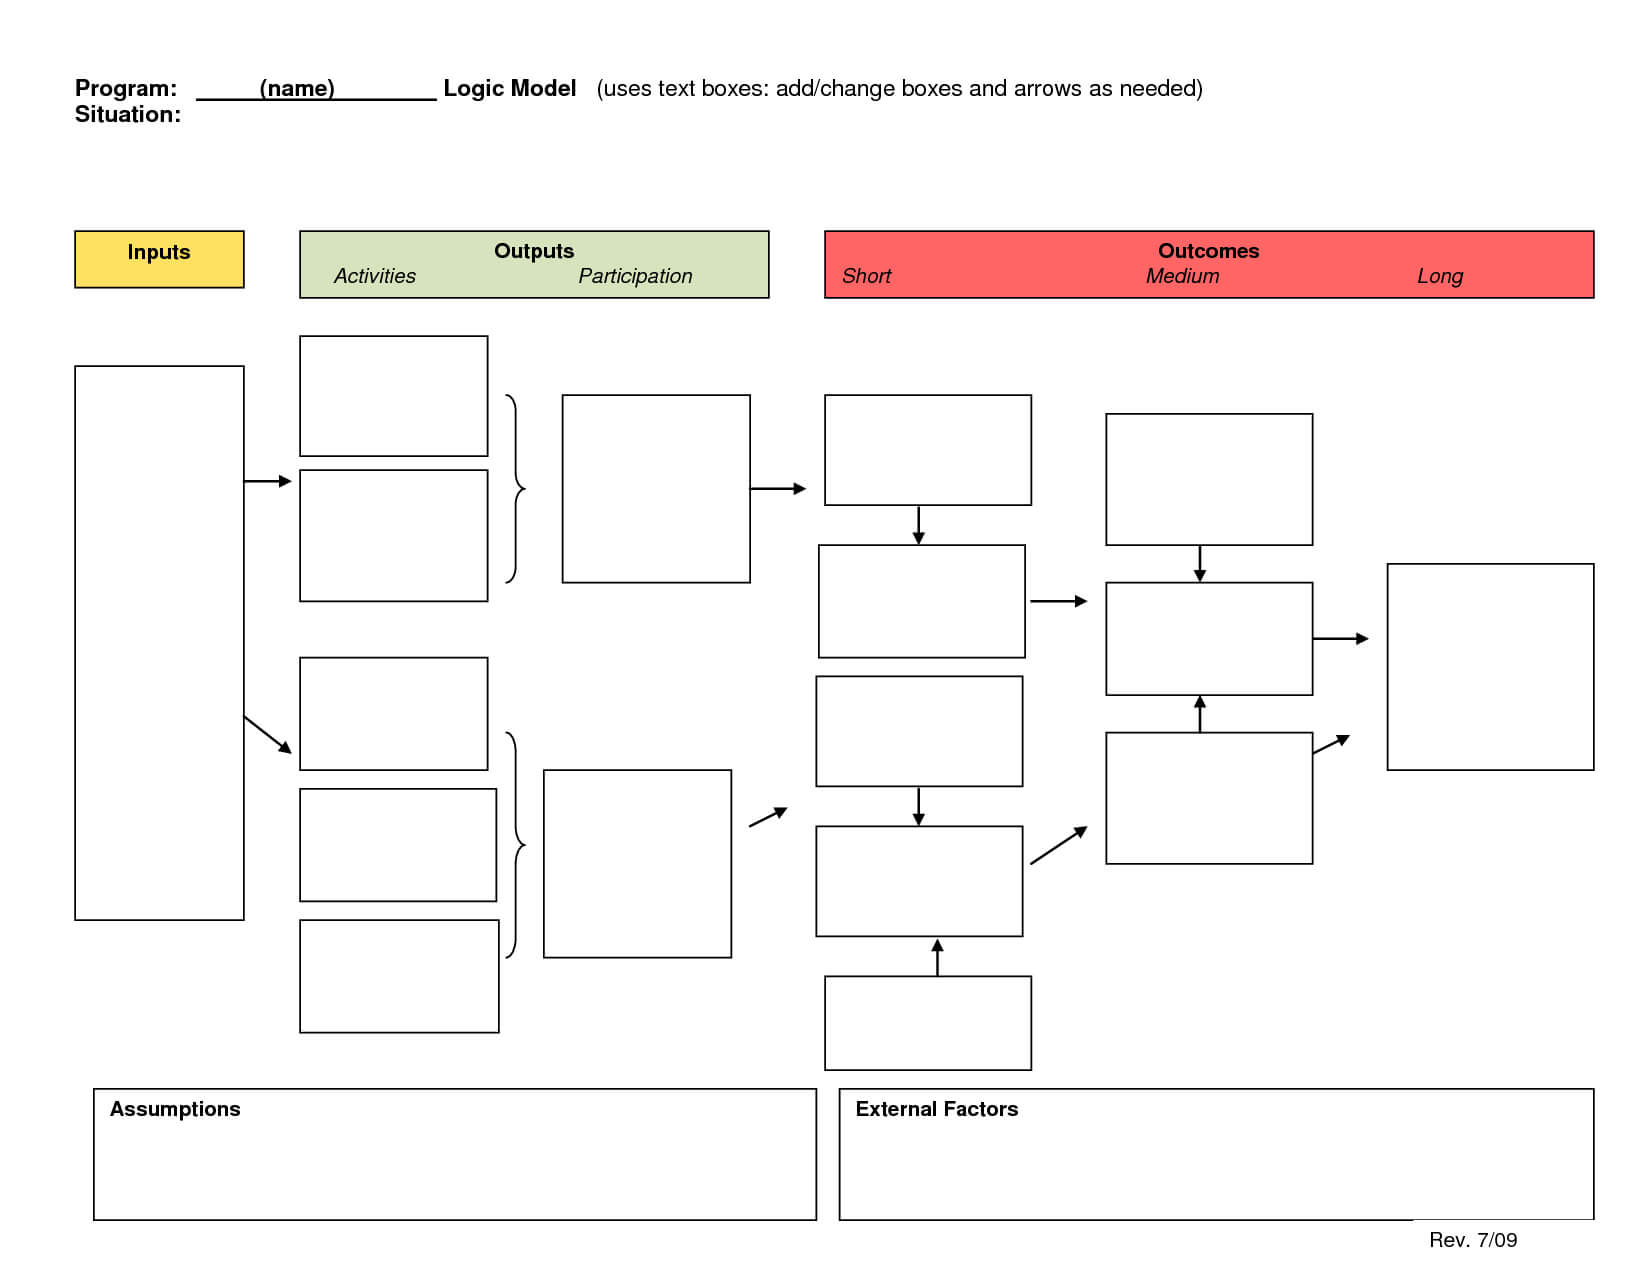 Logic Model Template | E Commercewordpress For Logic Model Template Microsoft Word